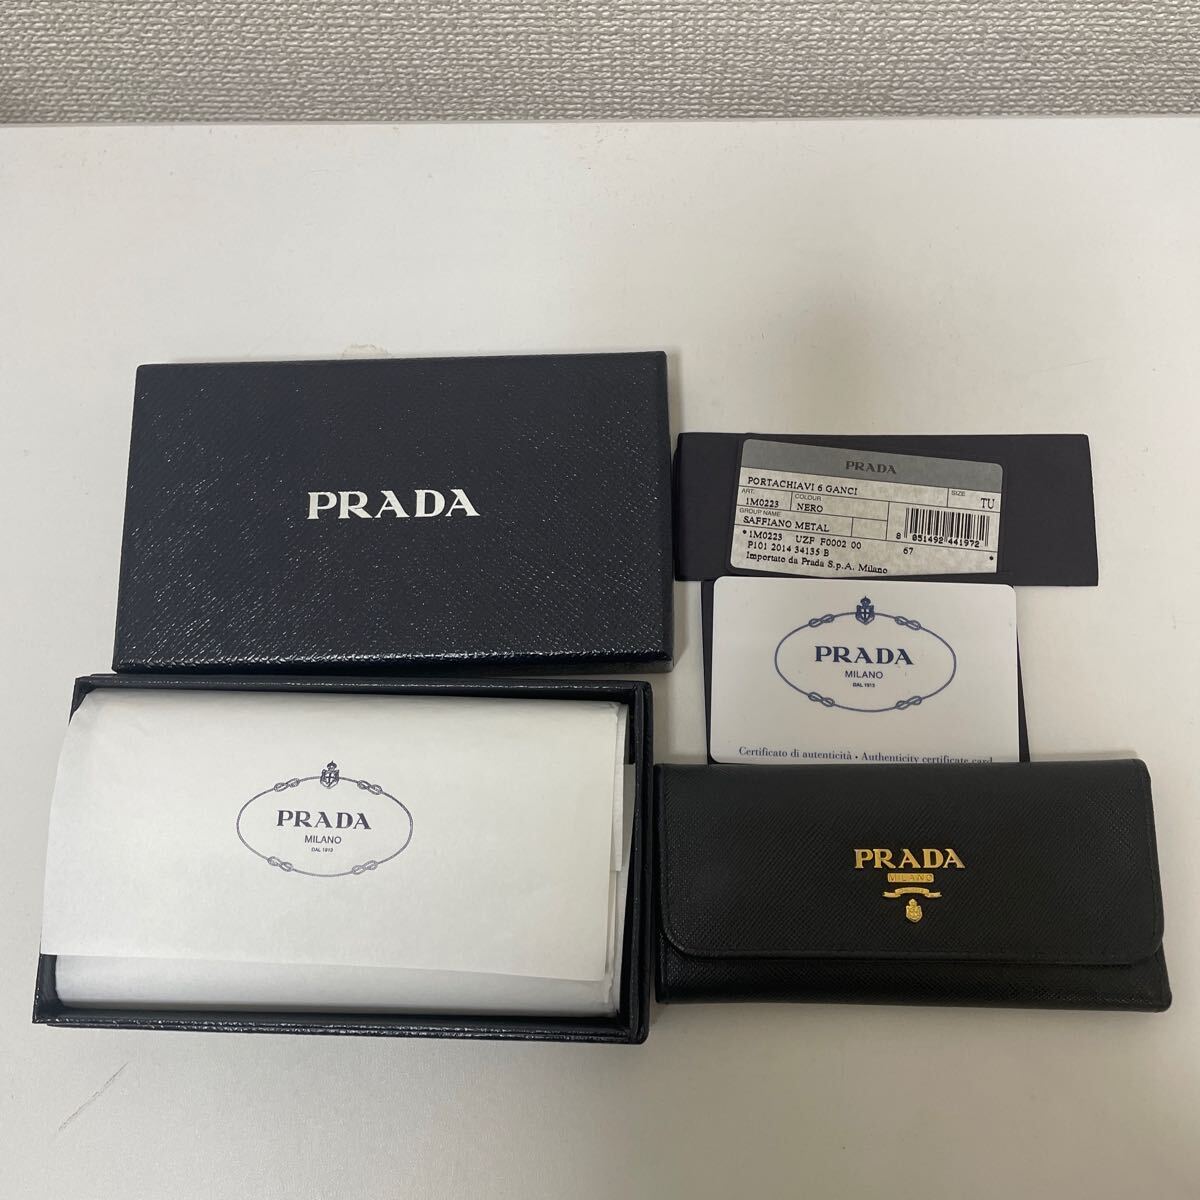 PRADA Prada 6 ream key case black PORTACHIAVI 6 GANCI SAFFIANO METAL size TU box equipped card equipped 